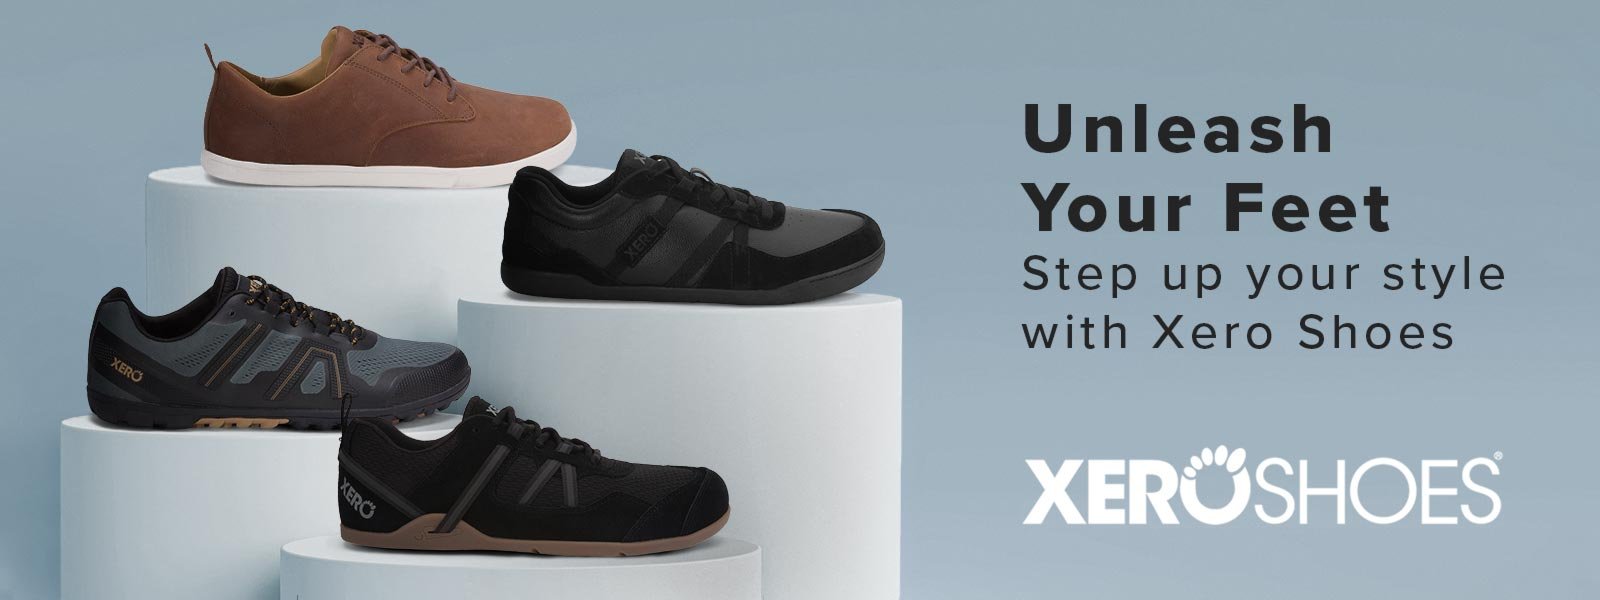 Xero Shoes Men's Forza Trainer Cross Training Shoe